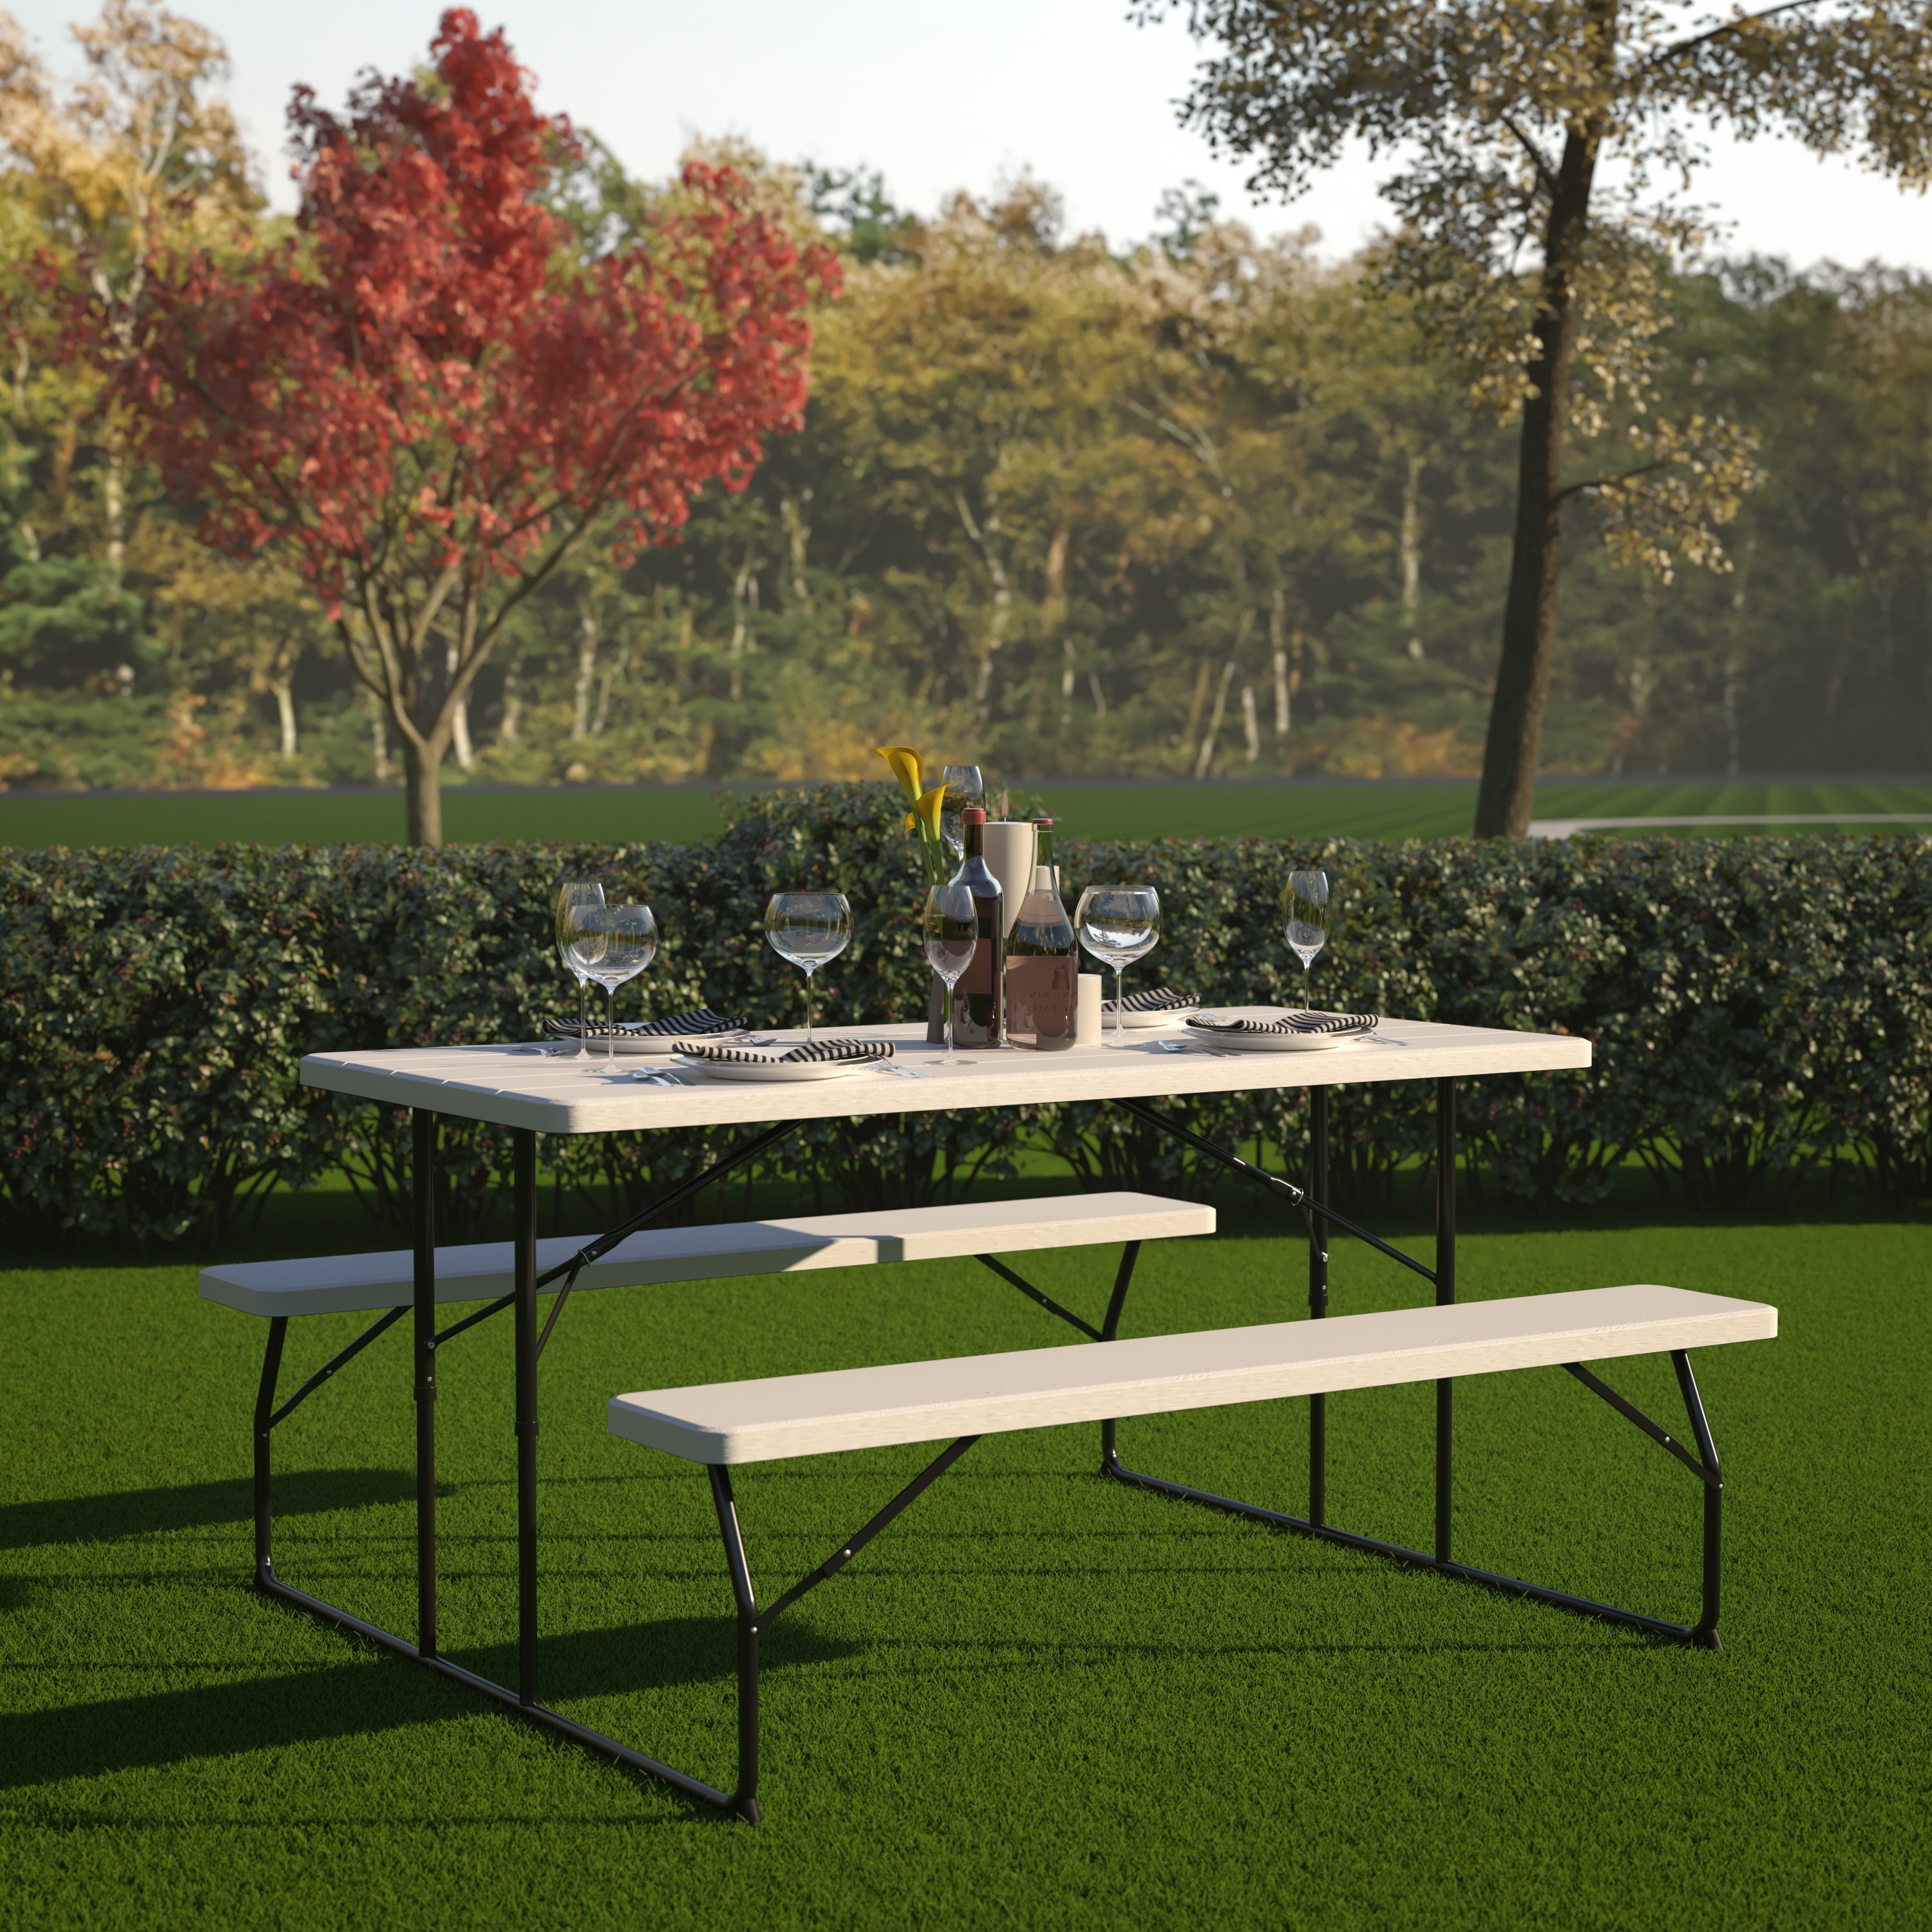 SHA CERLIN 3-Piece Outdoor Patio Camping Picnic Table Set with Bench Picnic Table for Patio Outdoor Activities Garden Use